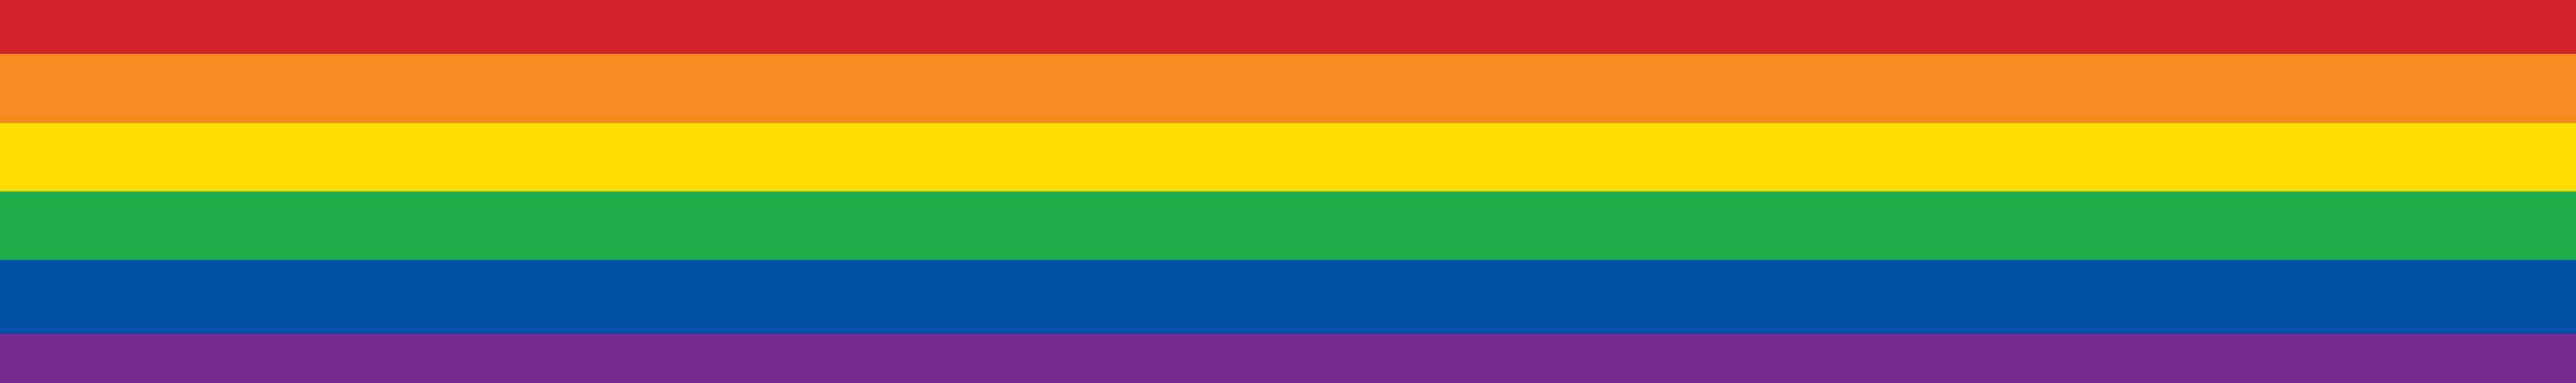 LBGTQ+ rainbow banner